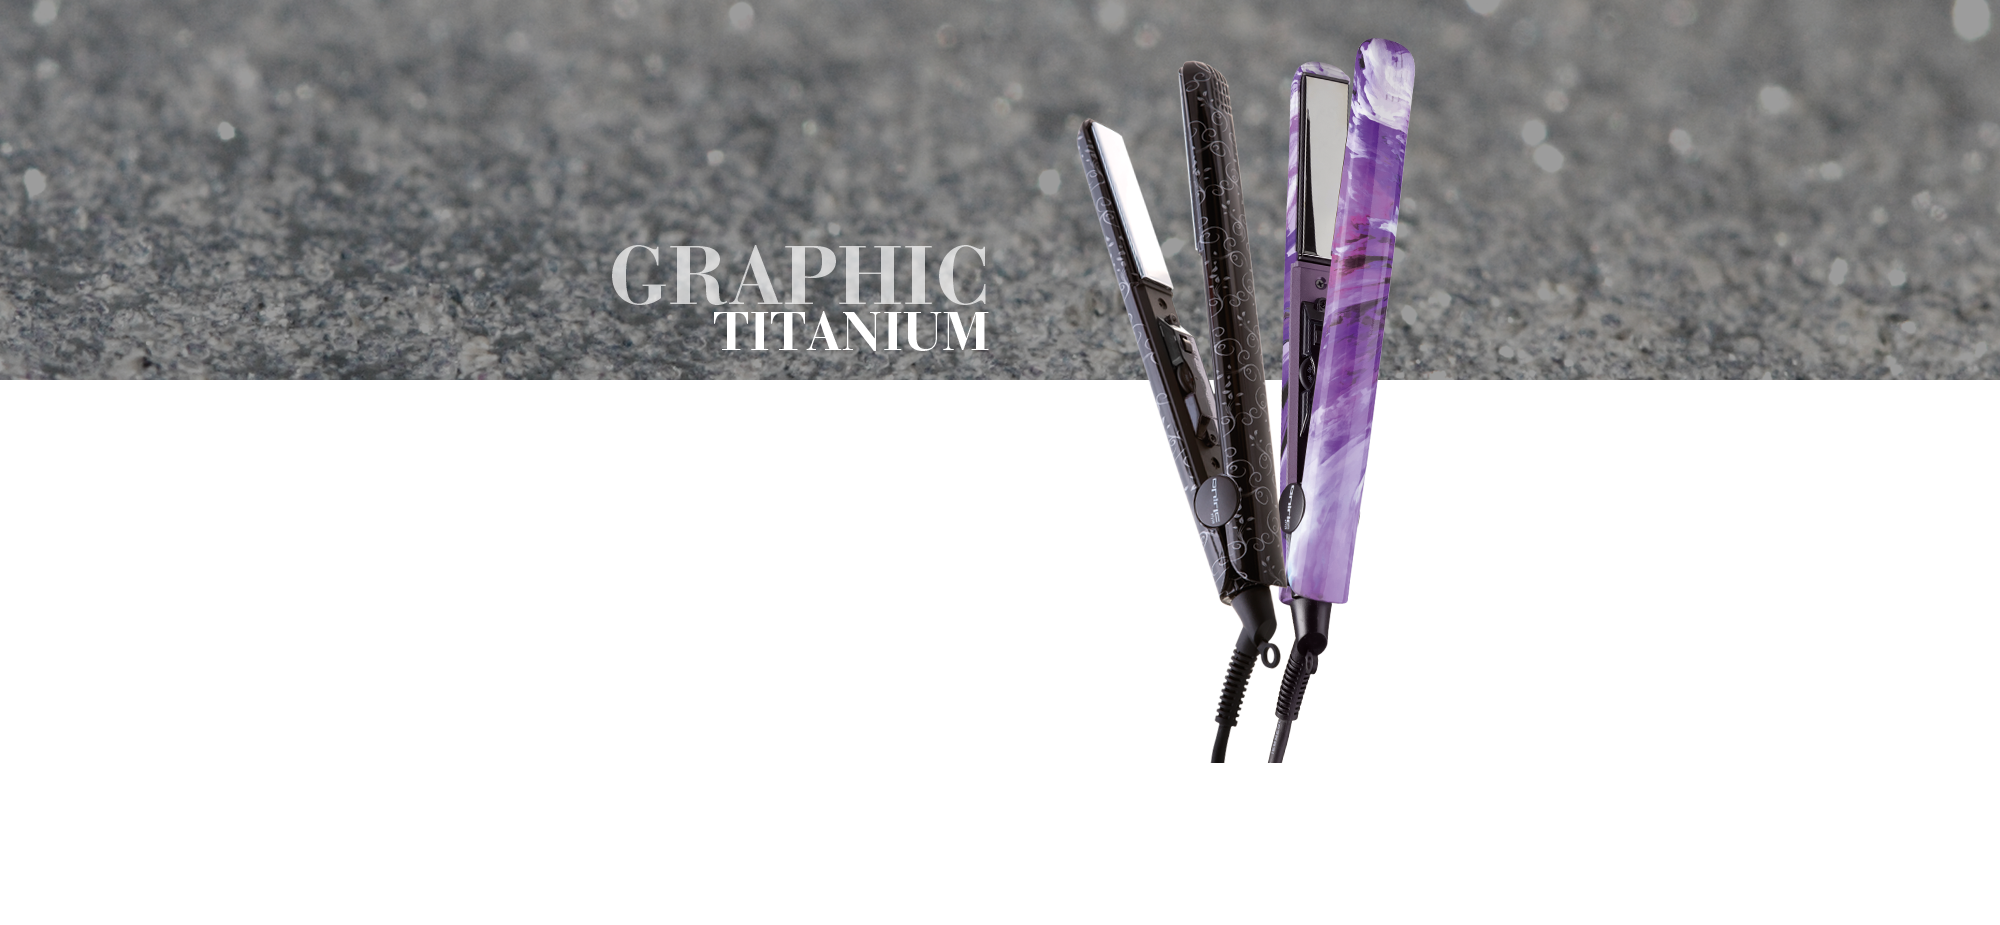 Graphic Titanium